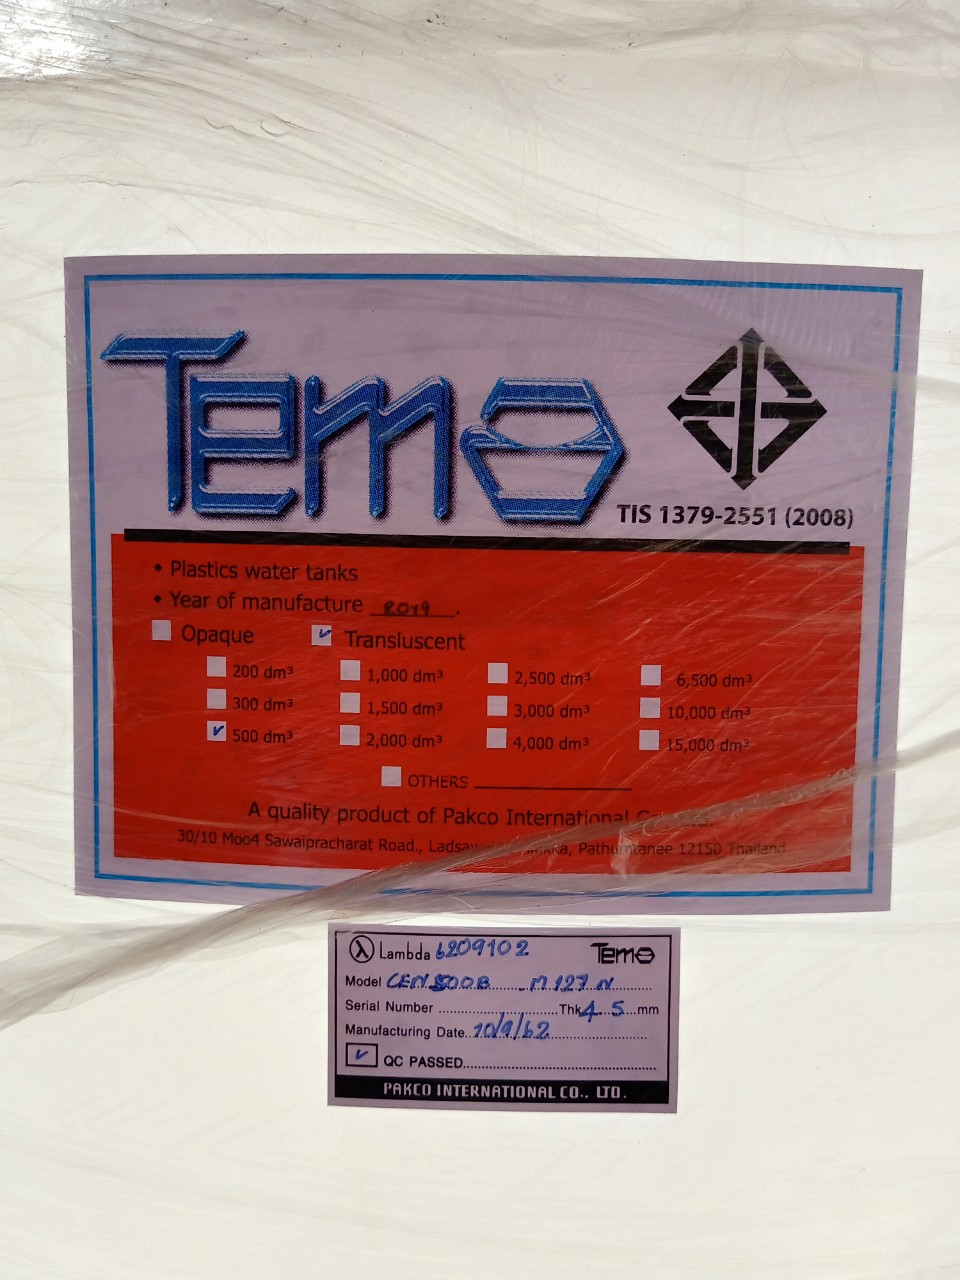 Bồn nhựa PE chứa hóa chất 100 lít hiệu Tema mã CEN100B-M5x6N của hãng Pakco